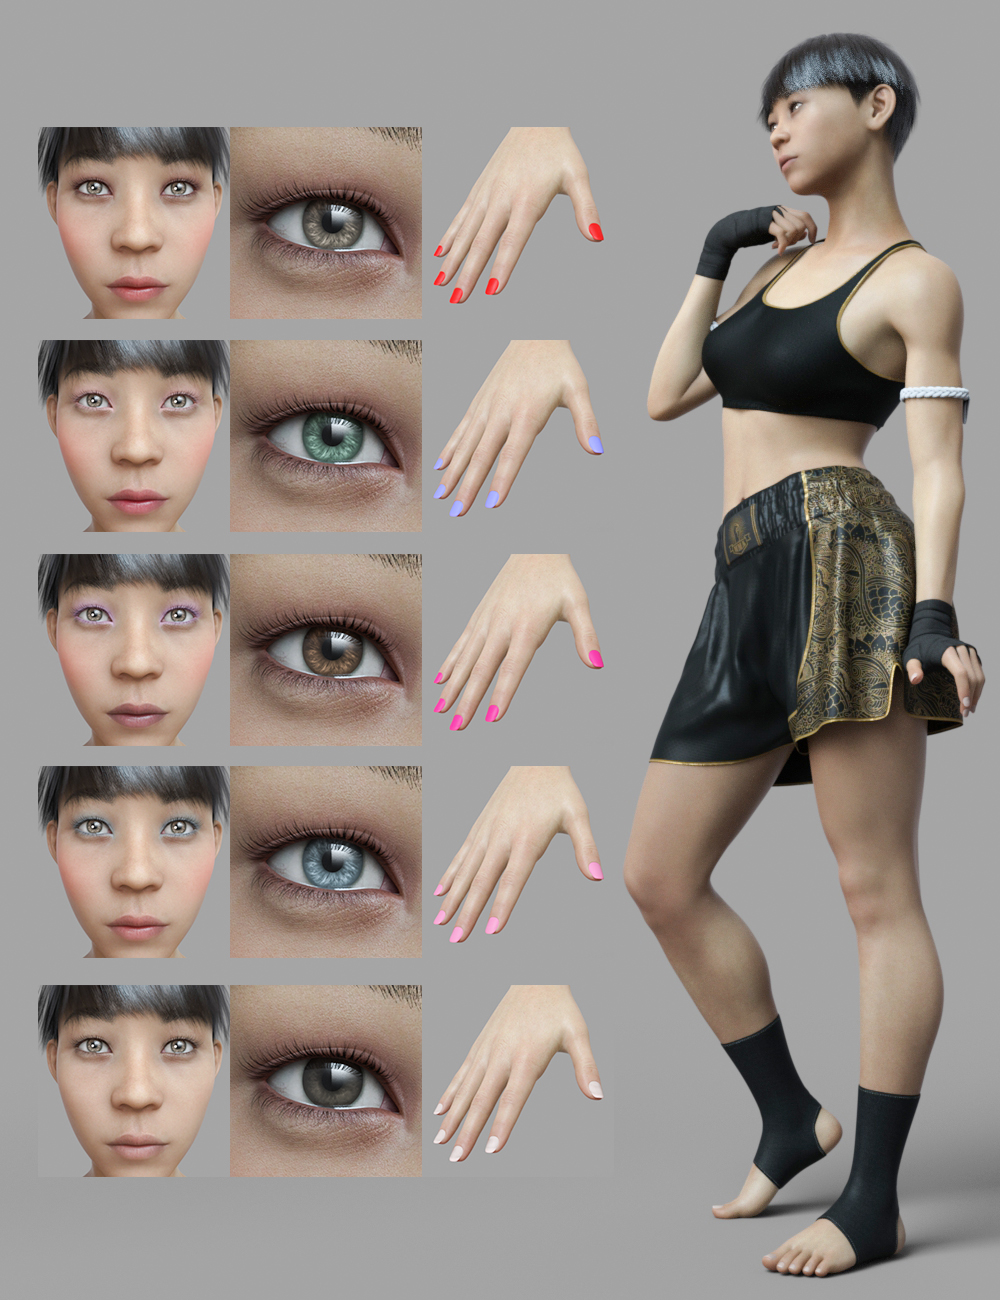 Chin-Sun for Genesis 8 Female by: Warloc, 3D Models by Daz 3D